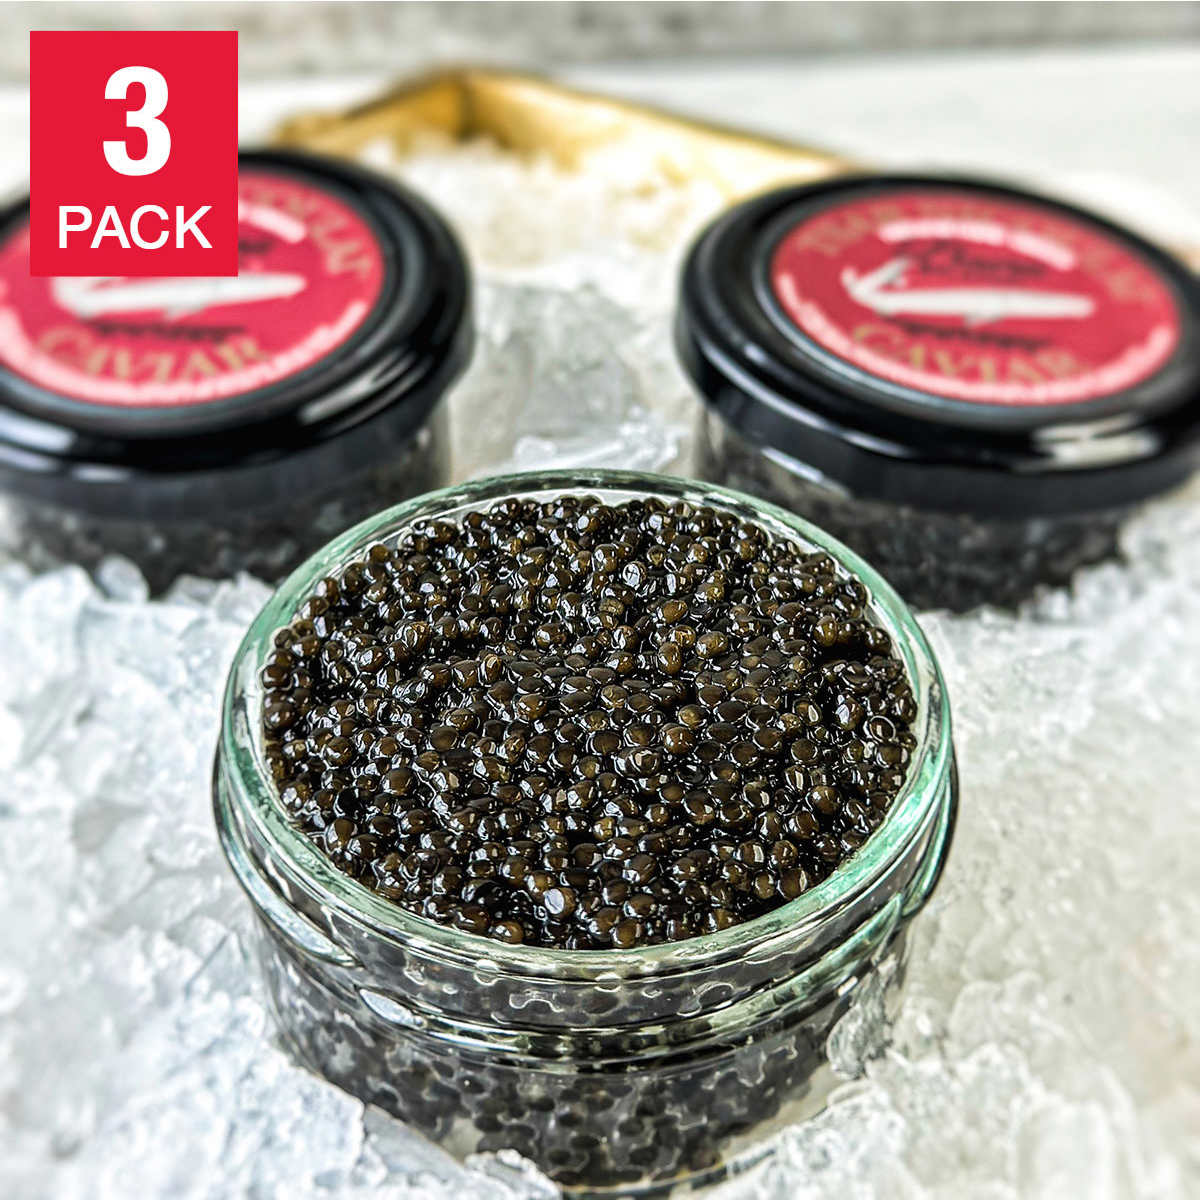 Costco online: Tsar Nicoulai Baerii (not Beluga/Osetra) Caviar 2 oz, 3-pack (6 oz total), $139.99 Shipped